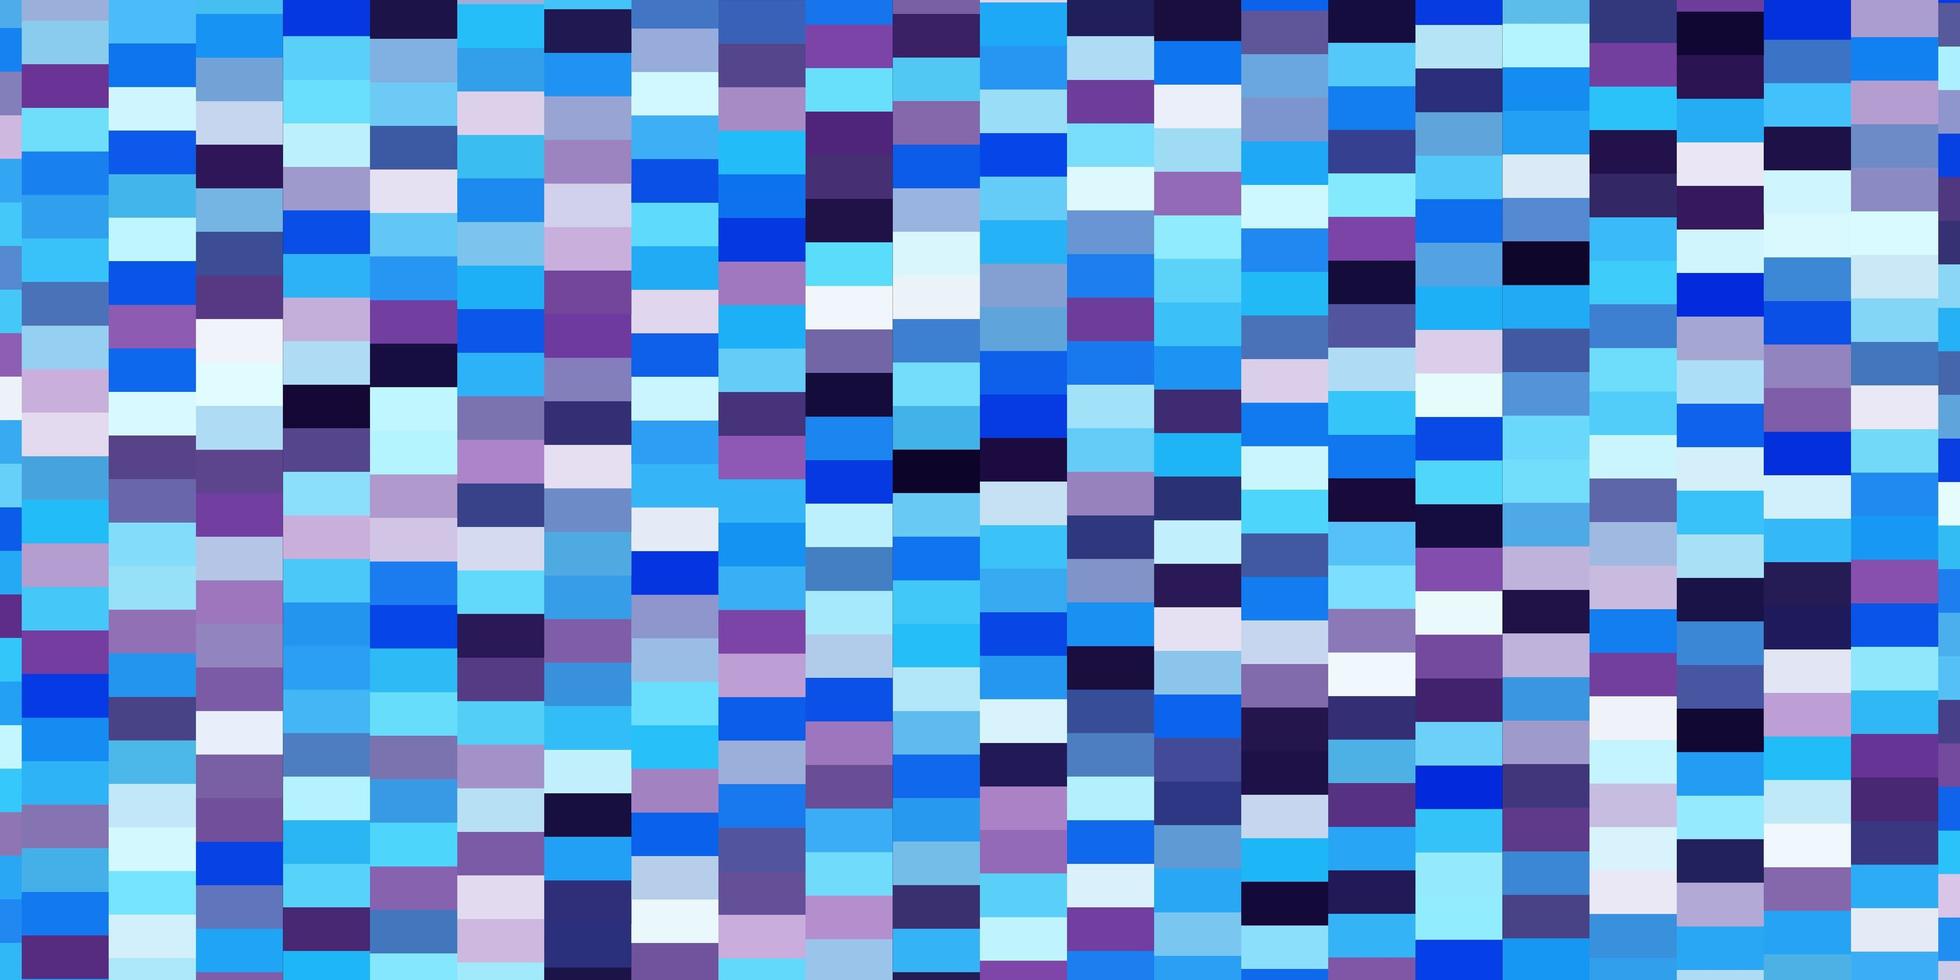 ljusrosa, blå vektorbakgrund i polygonal stil. vektor